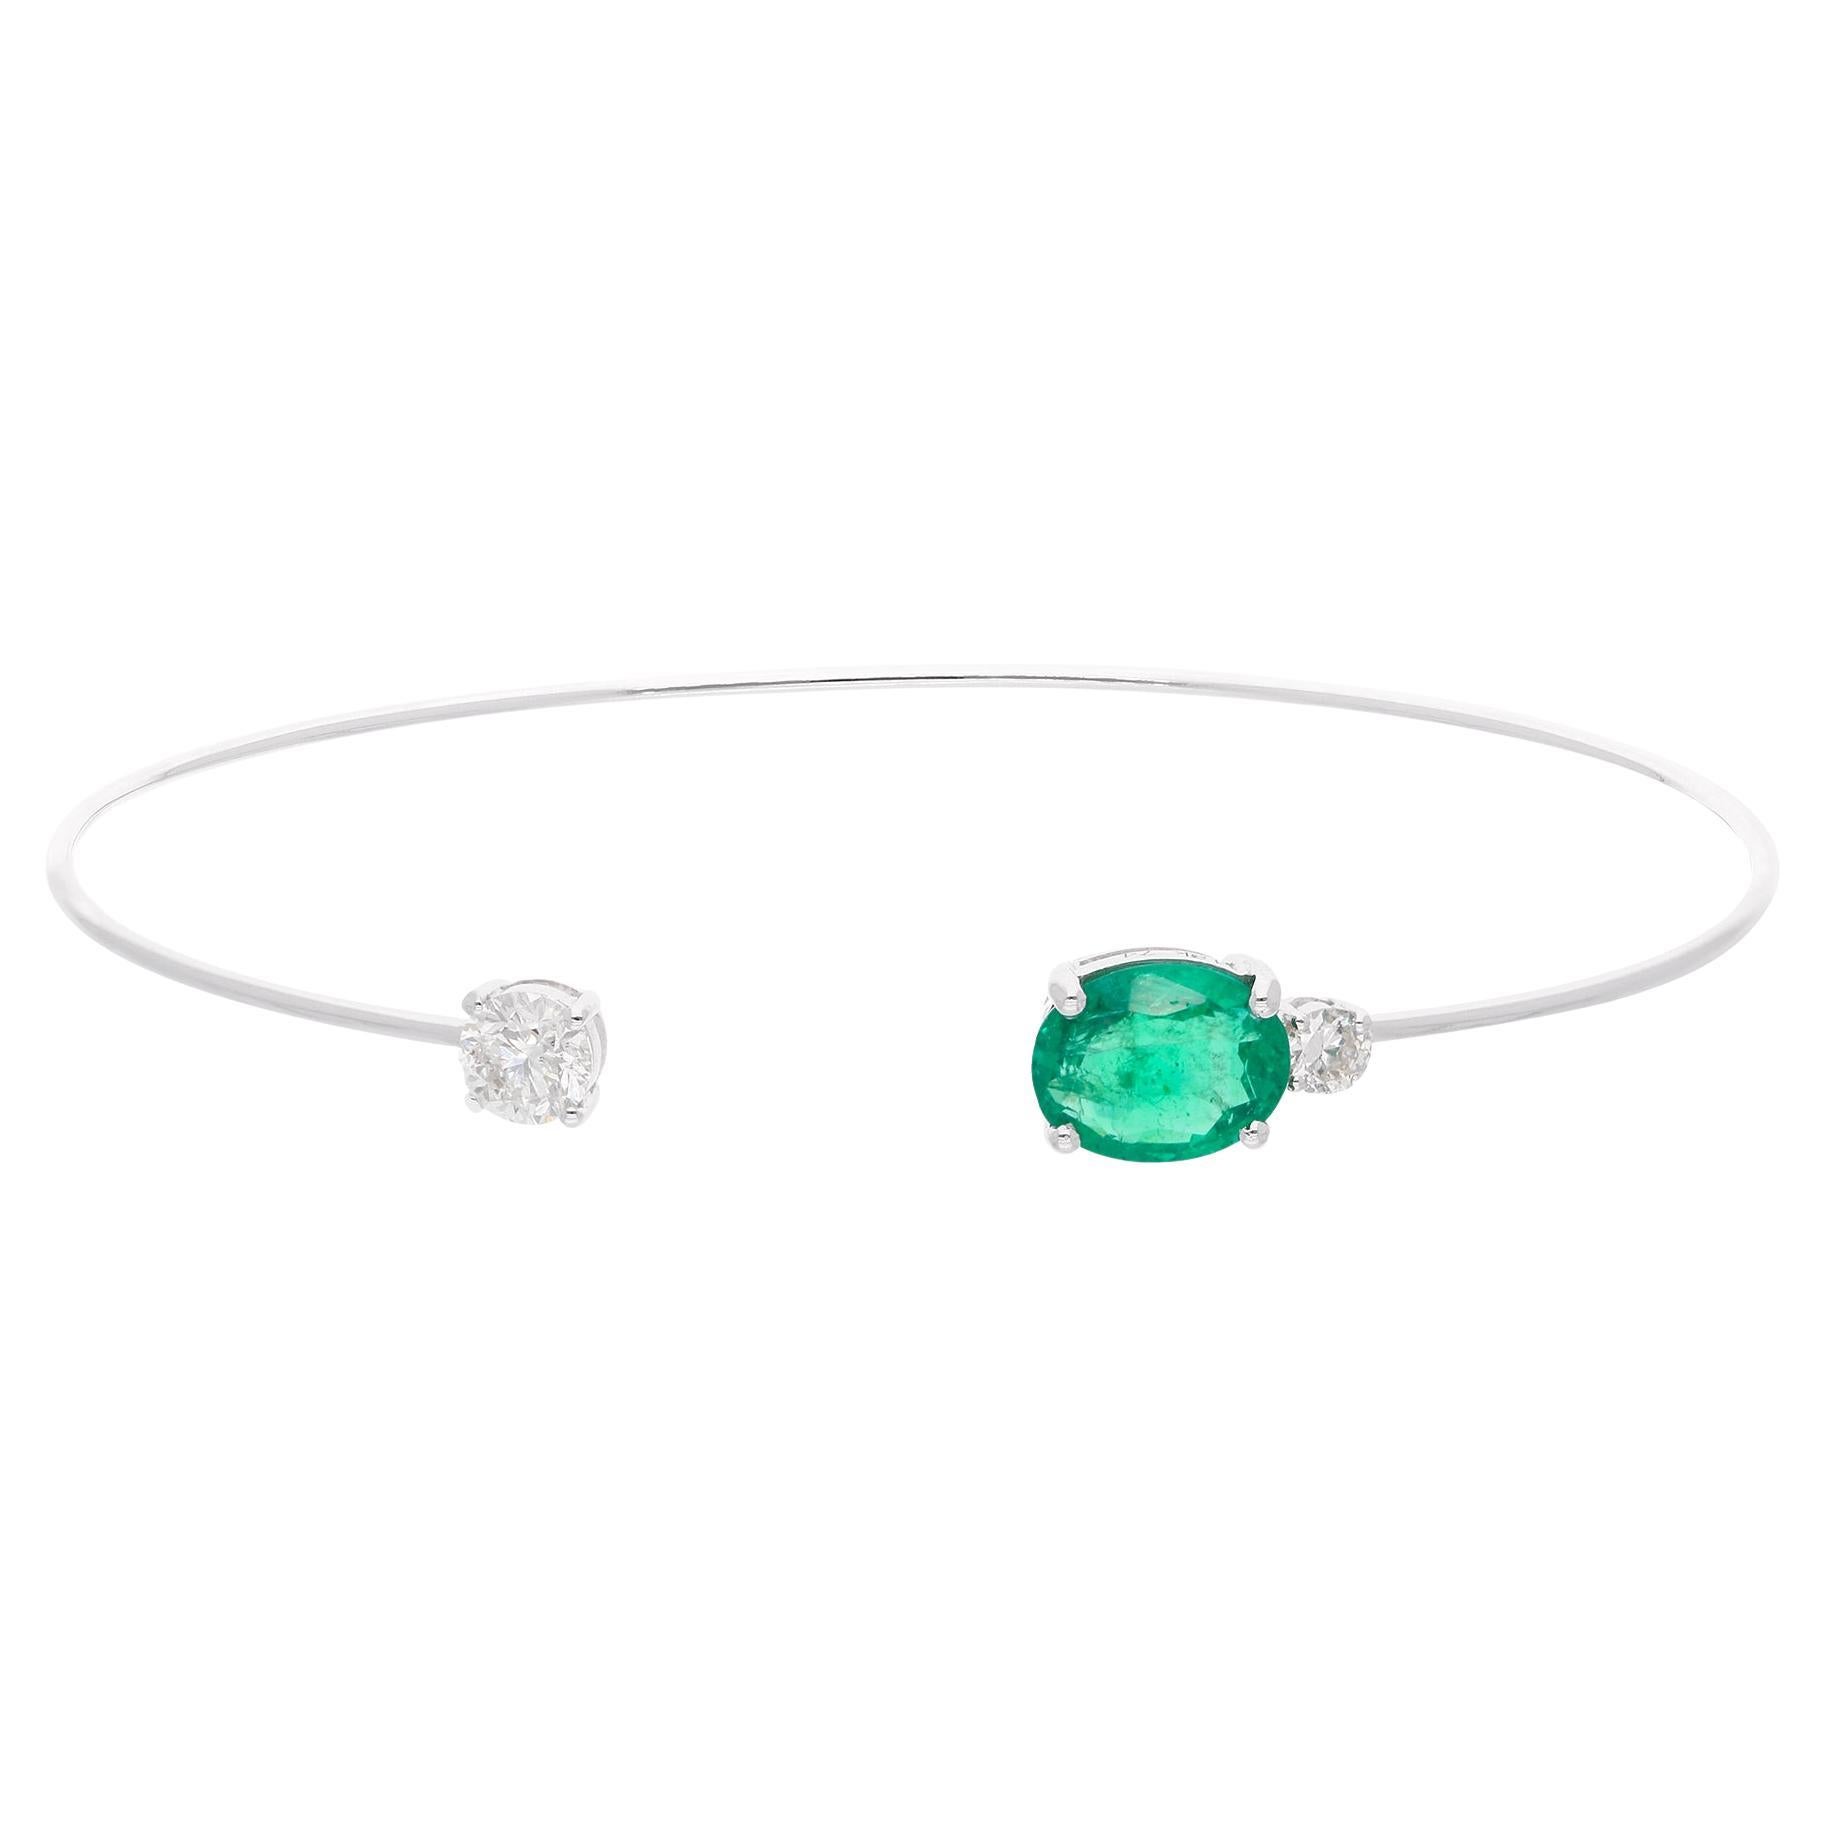 Ovaler natürlicher Smaragd Edelstein Manschette Armreif Armband Diamant 18 Karat Weißgold